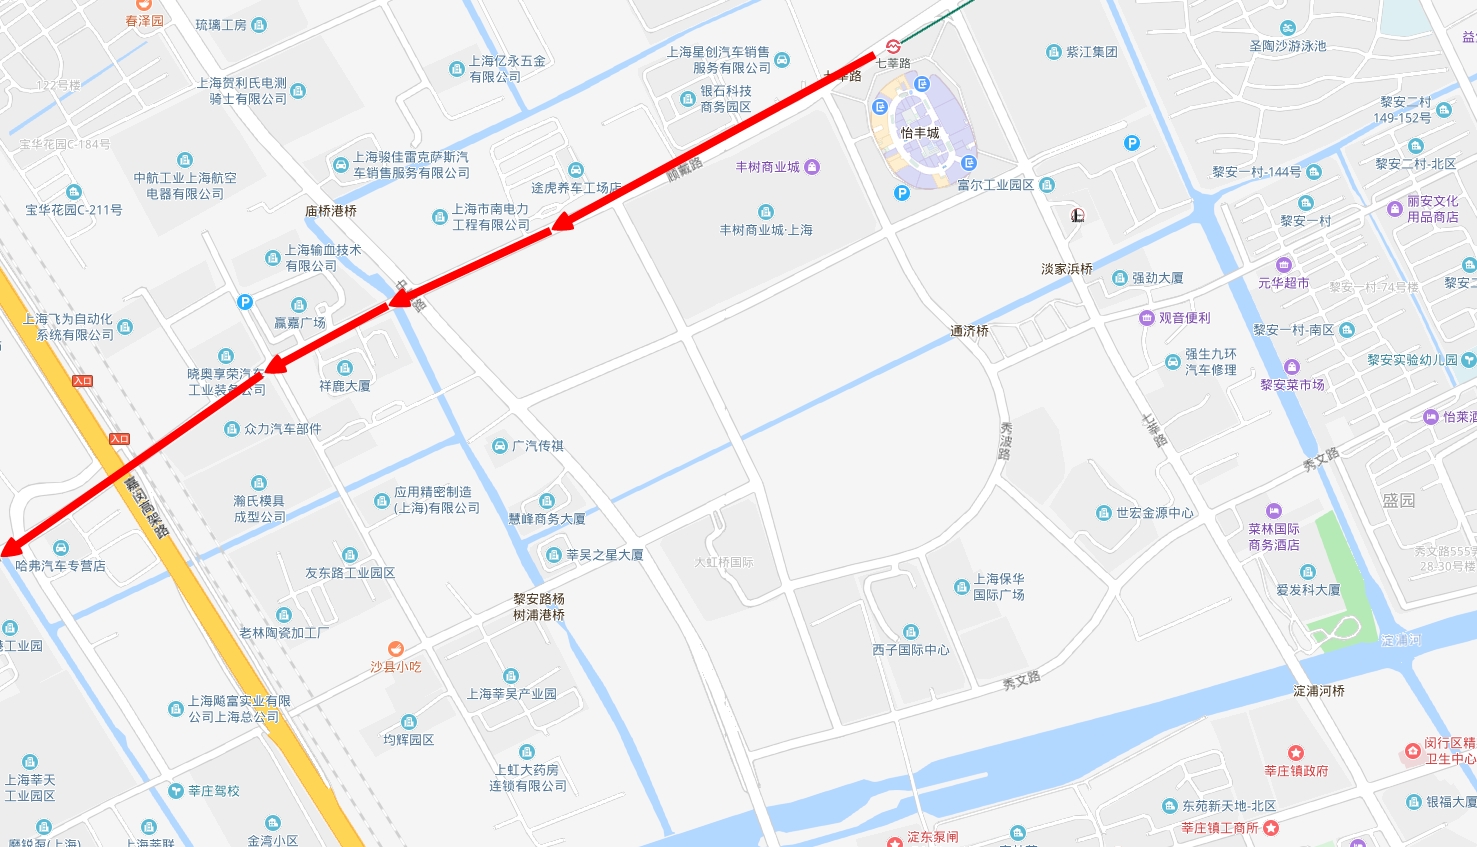 2020年上海12号线延伸图片